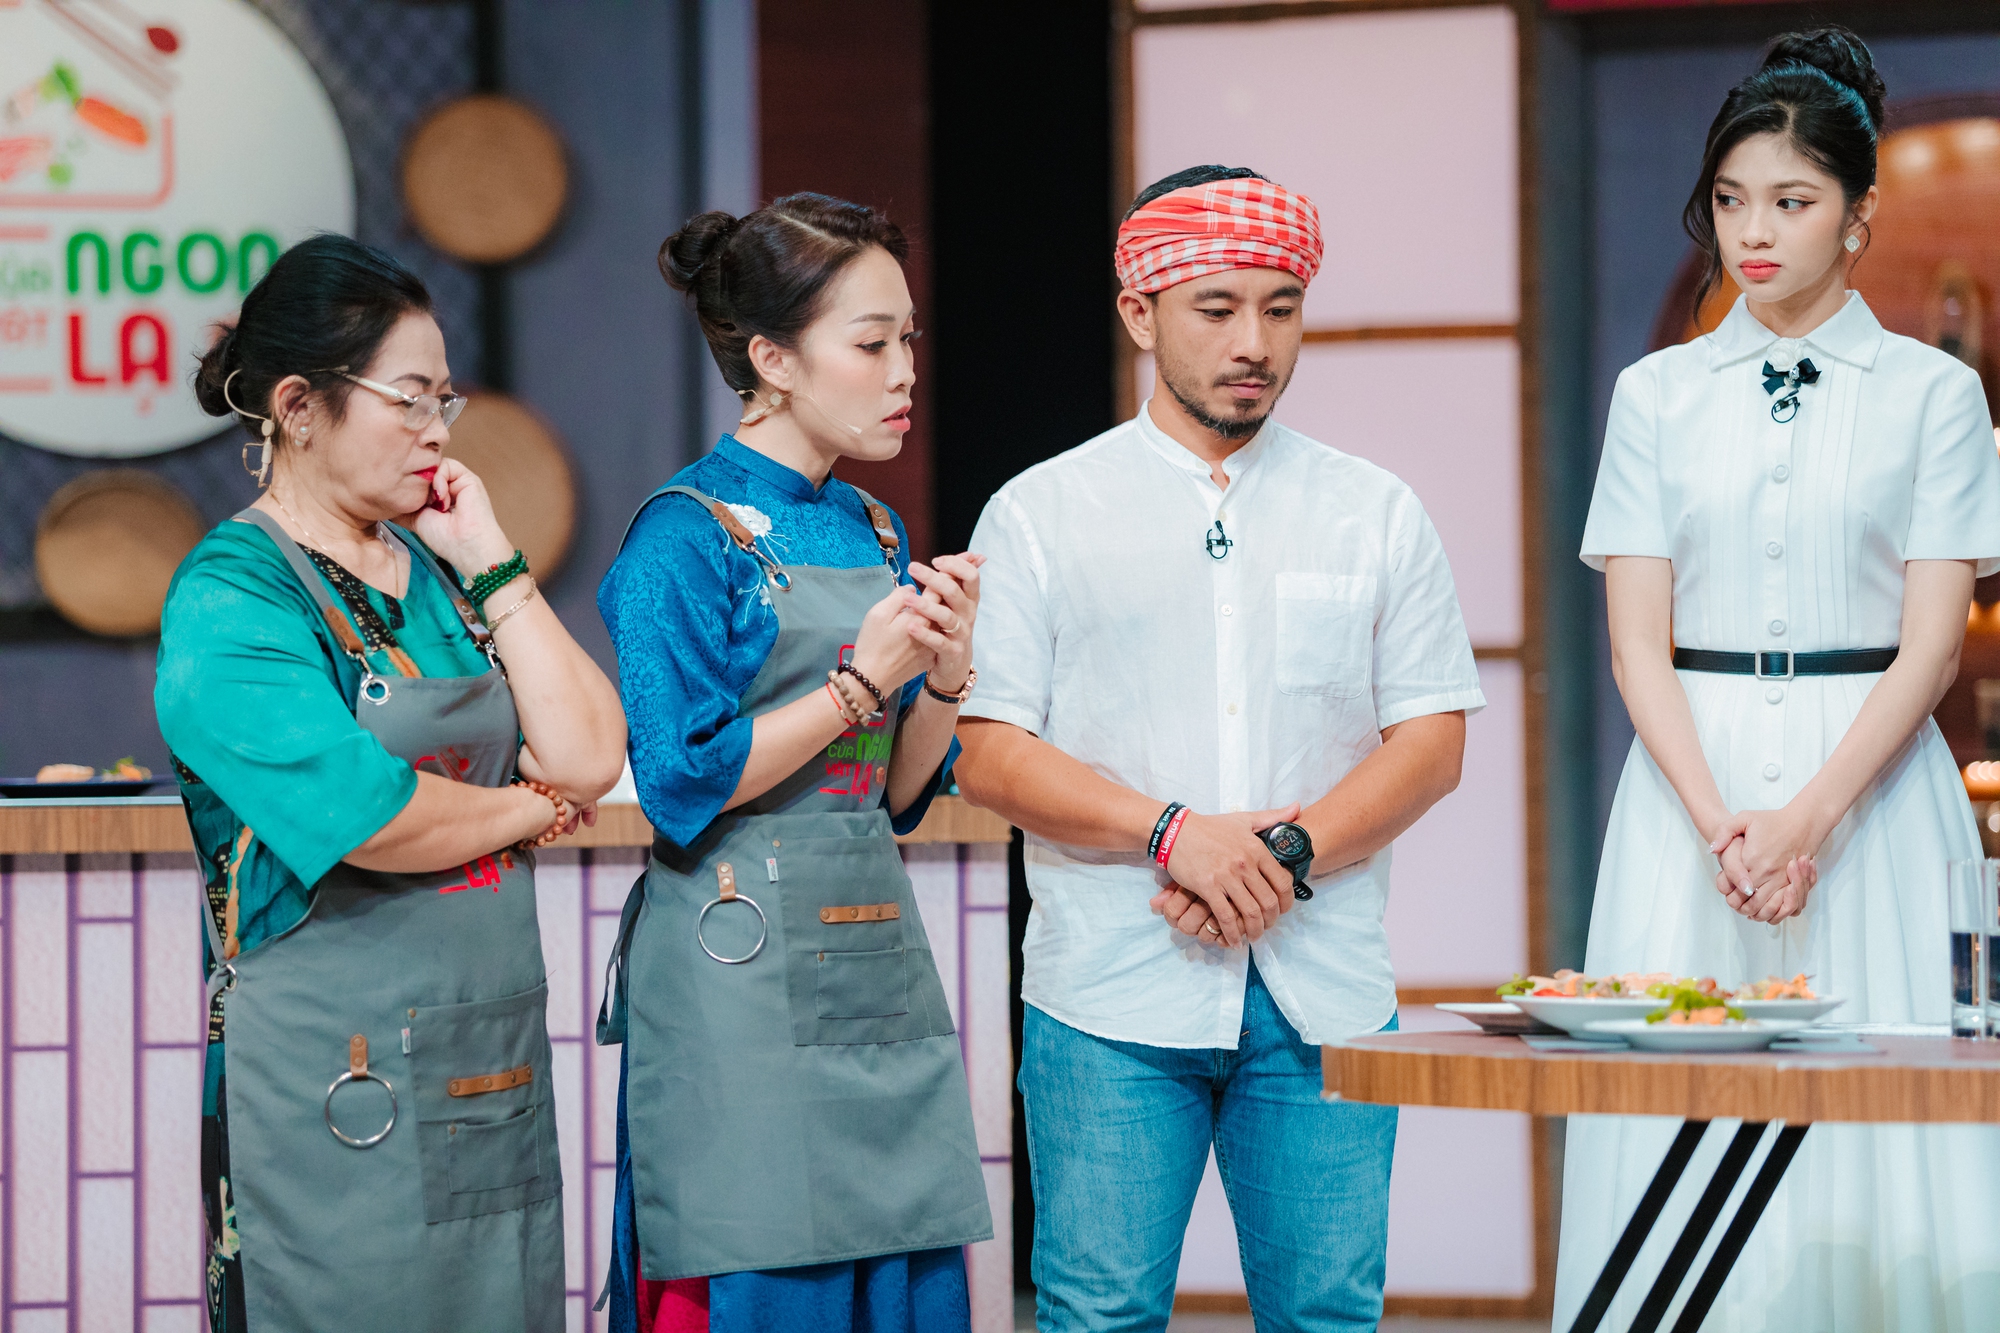 Của ngon vật lạ: Á hậu Minh Kiên thích vào bếp, tiết lộ món sở trường